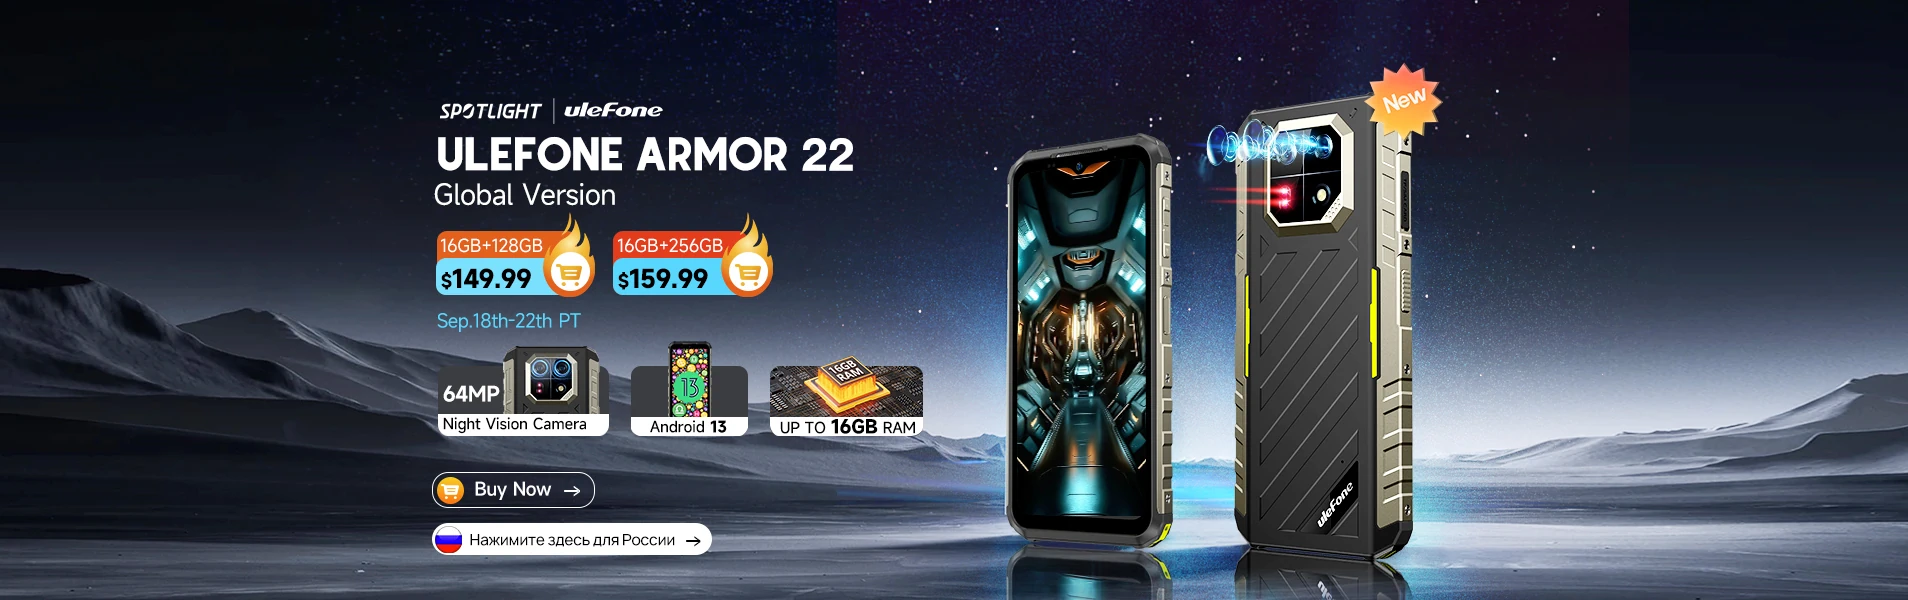 Распродажа смартфонов Ulefone Armor 22 со скидкой